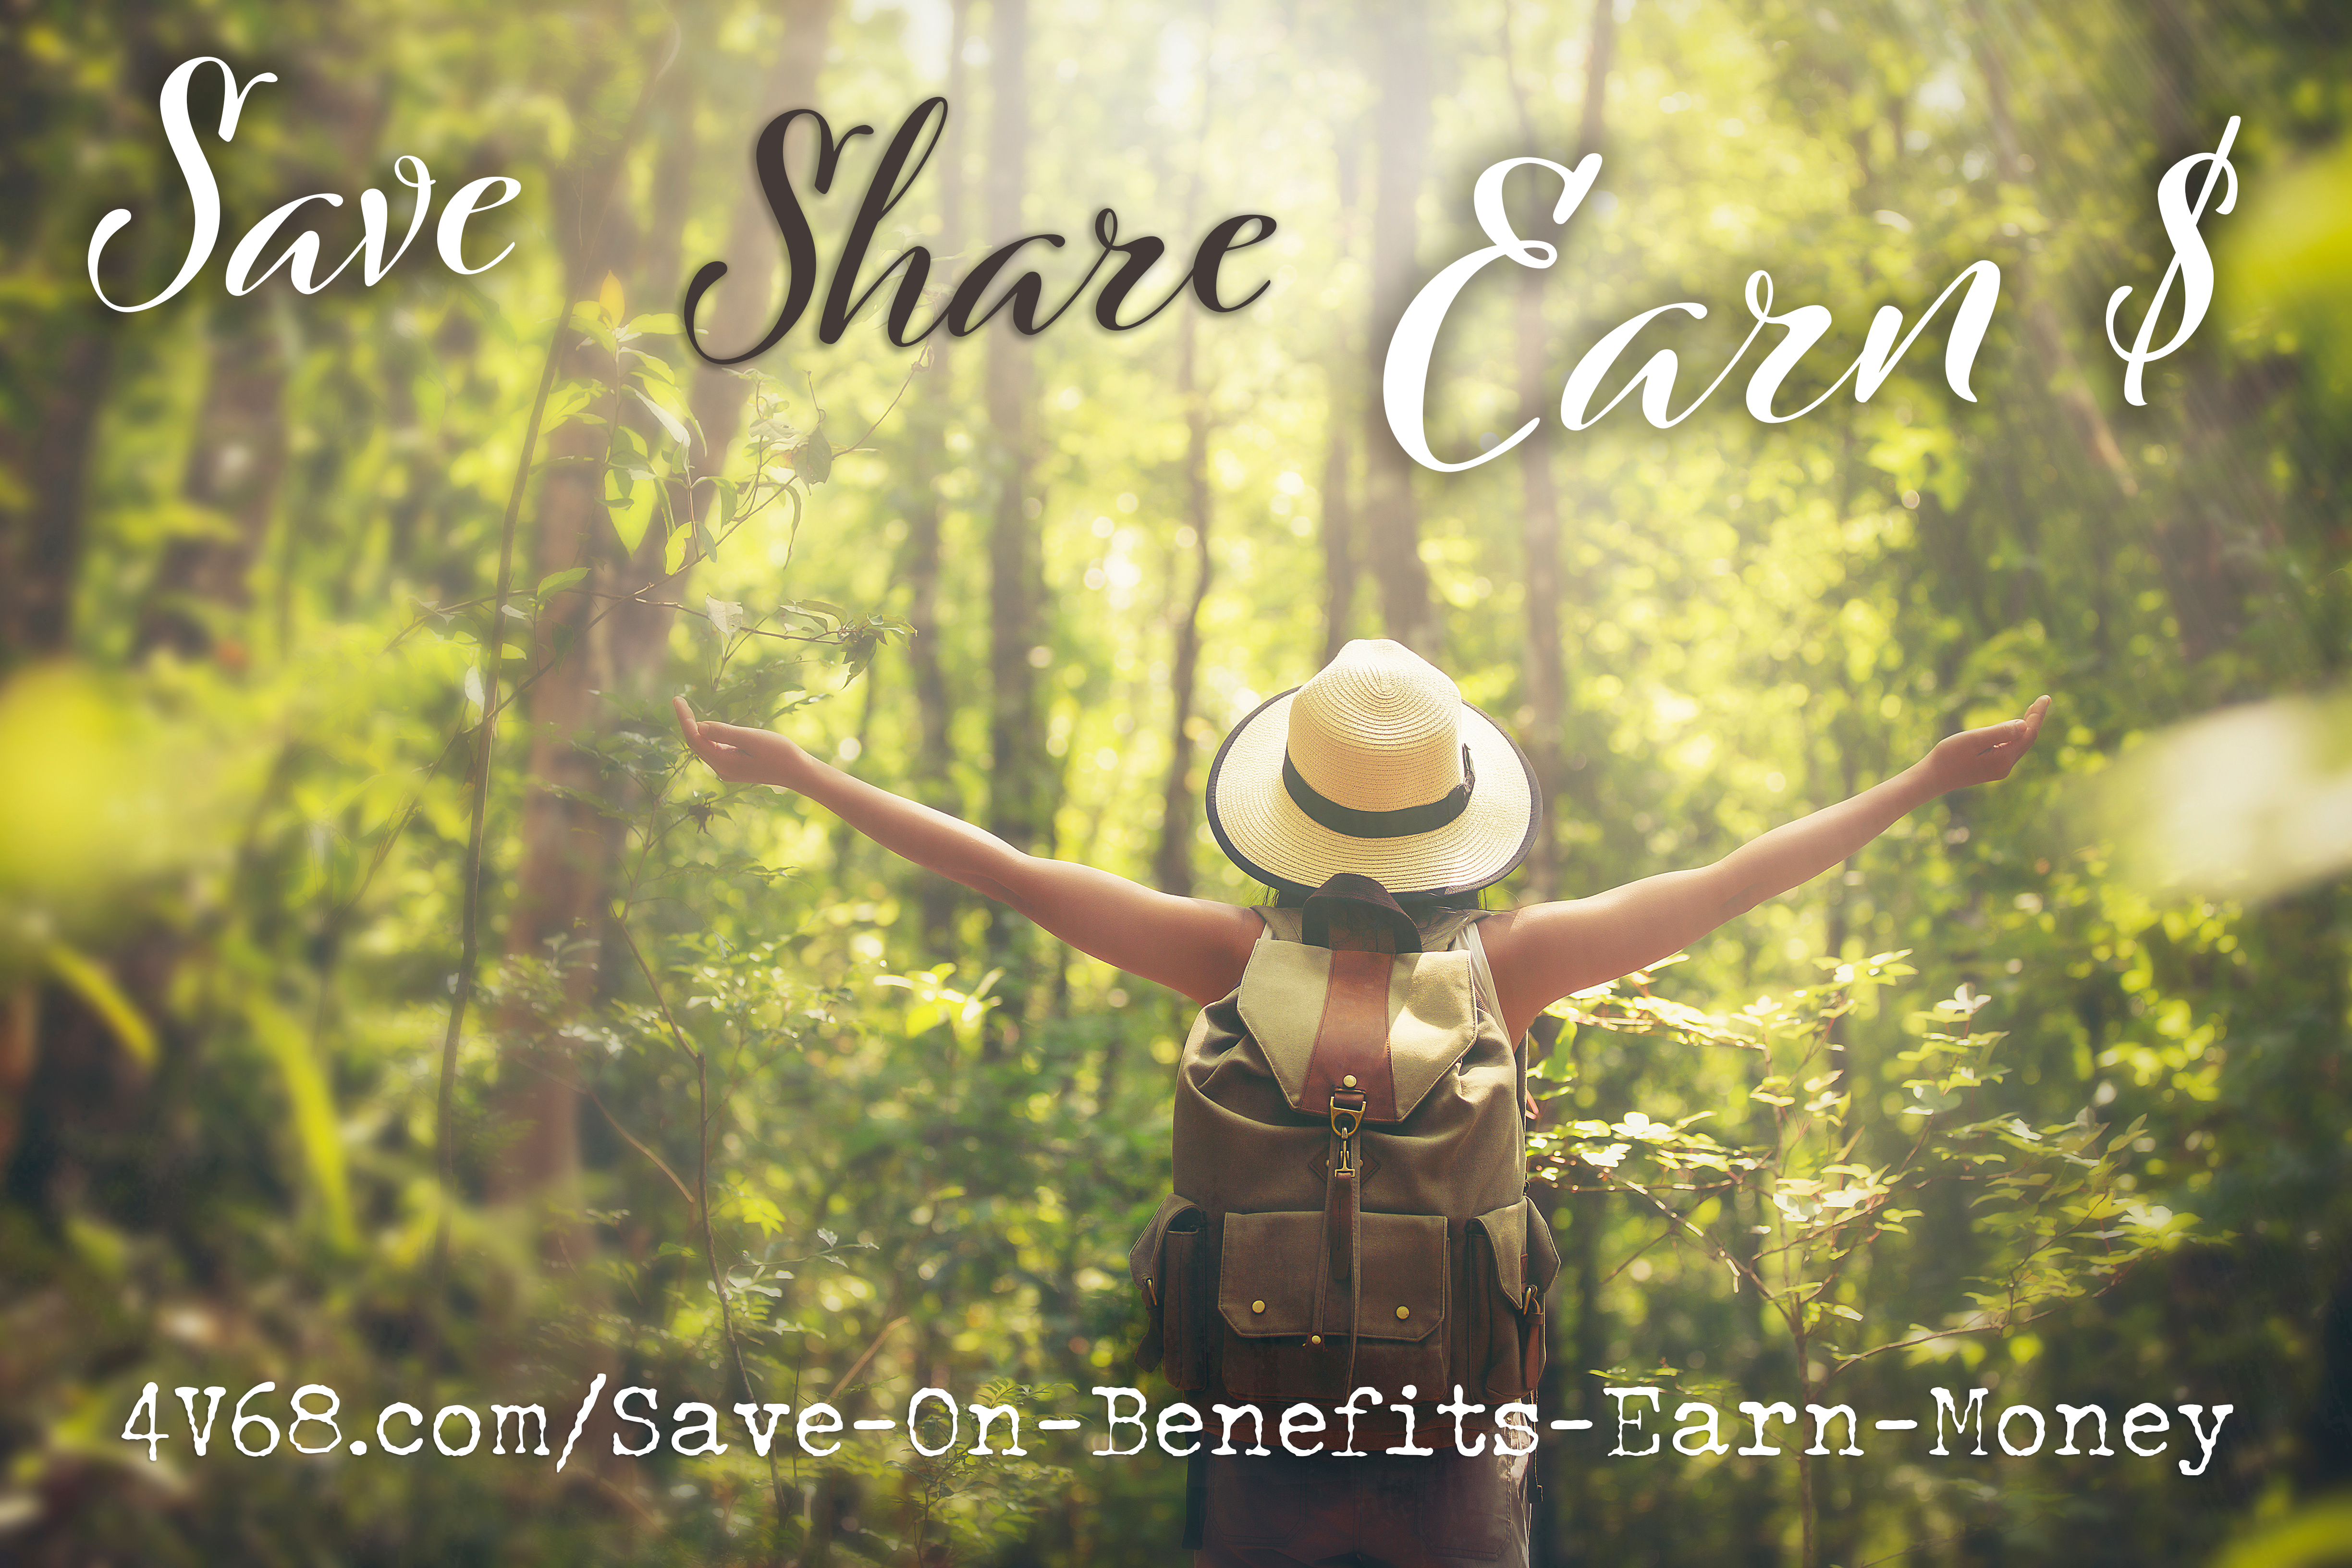 Save Share Earn $